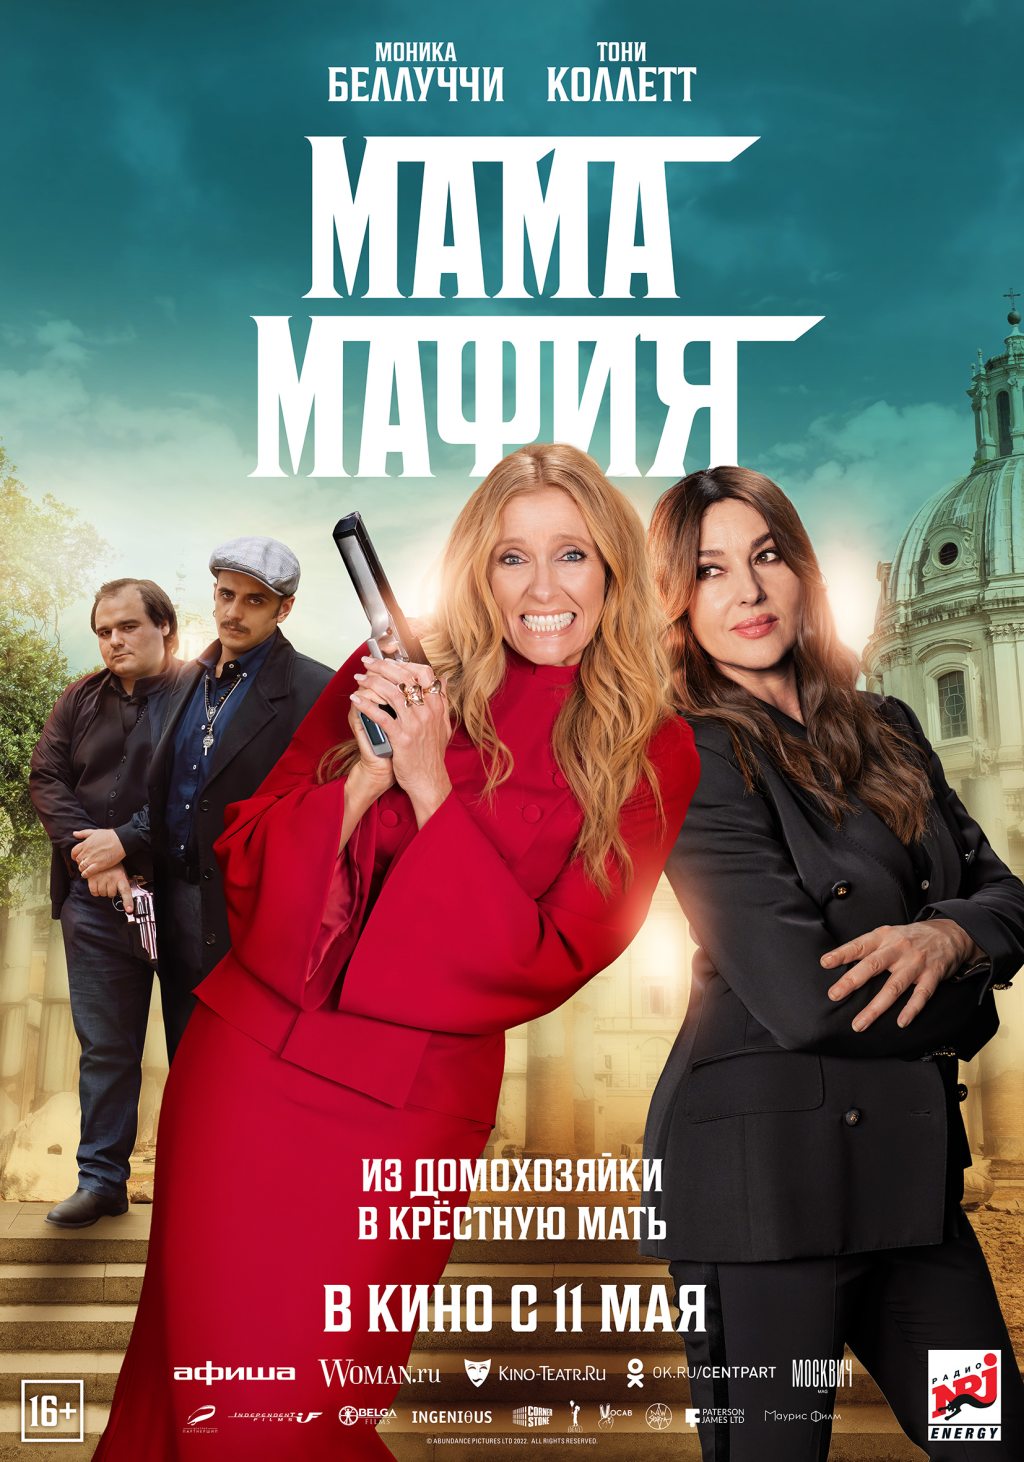 Mafia Mamma Blu-Ray Release